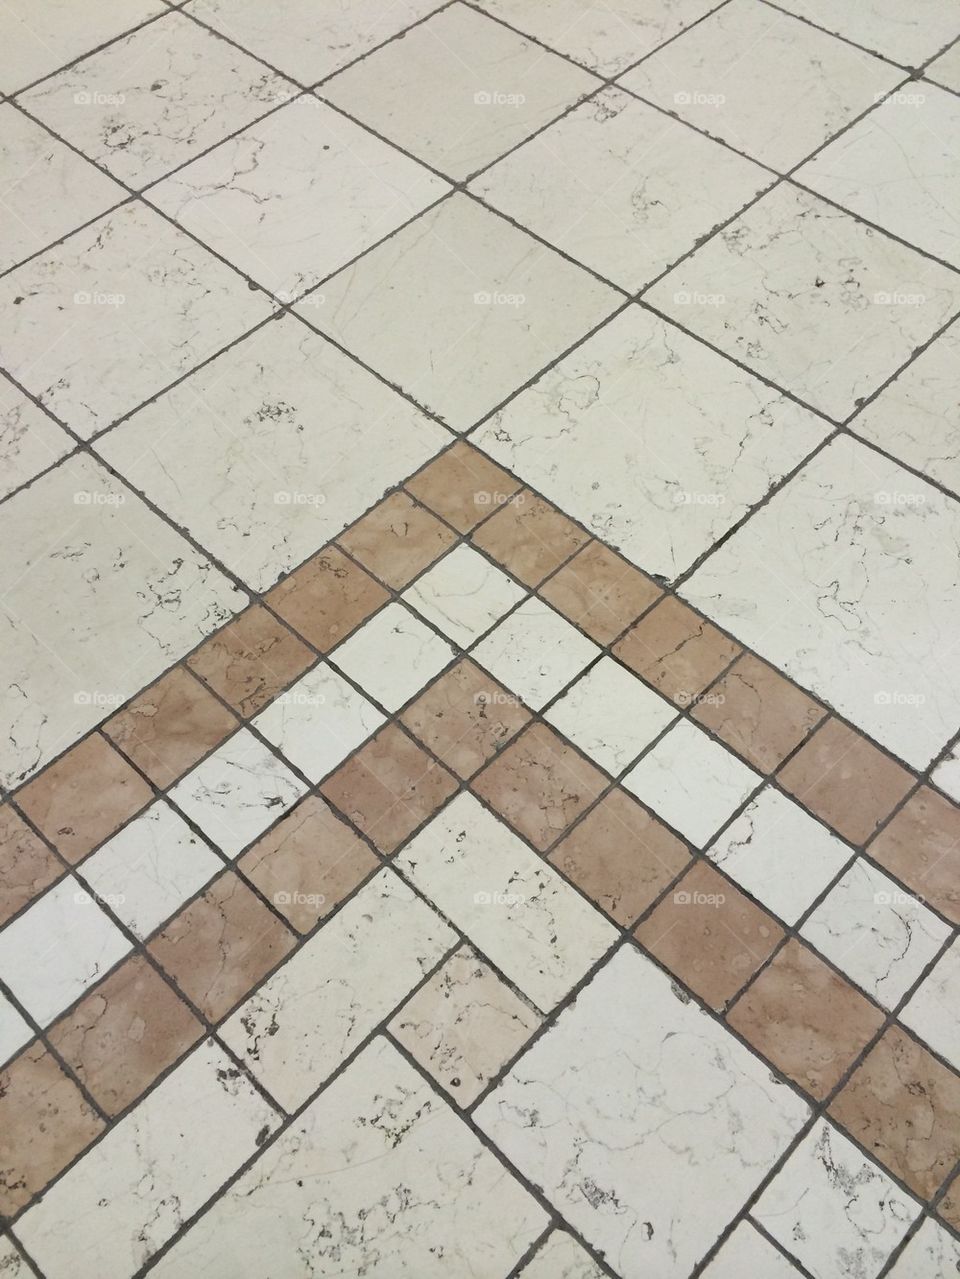 Villagio mall floor pattern